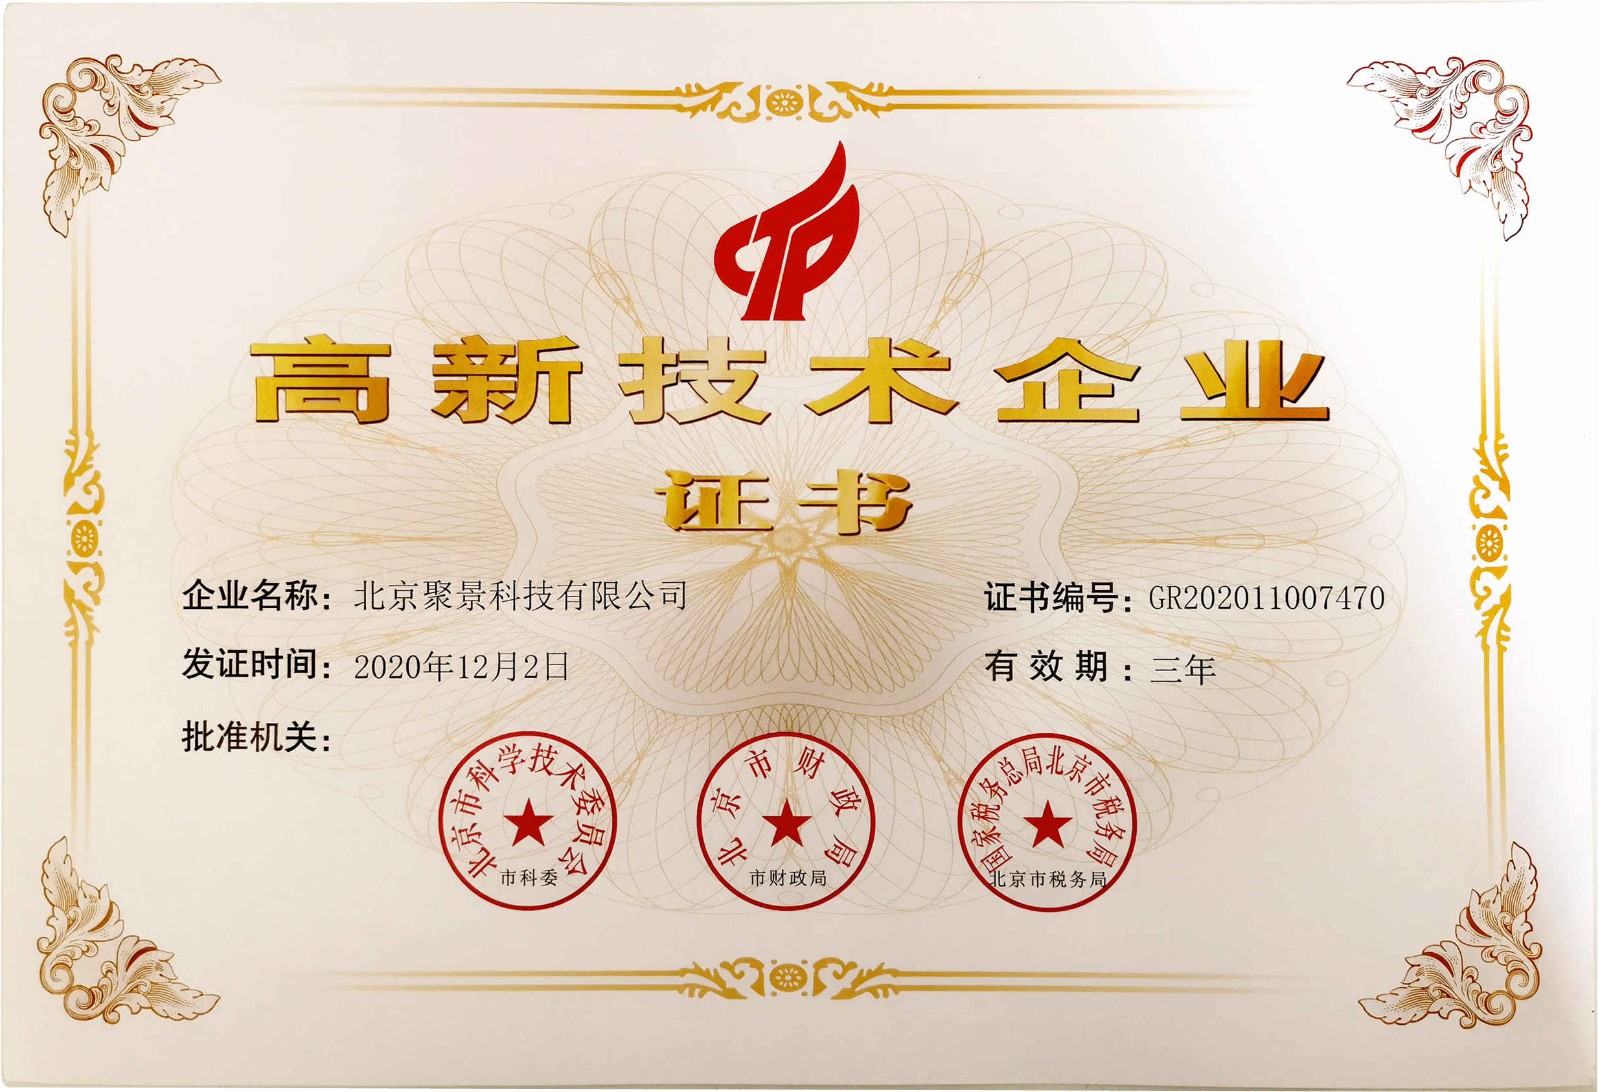 喜讯!热烈祝贺北京聚景科技有限公司获得国家级高新技术企业认定!